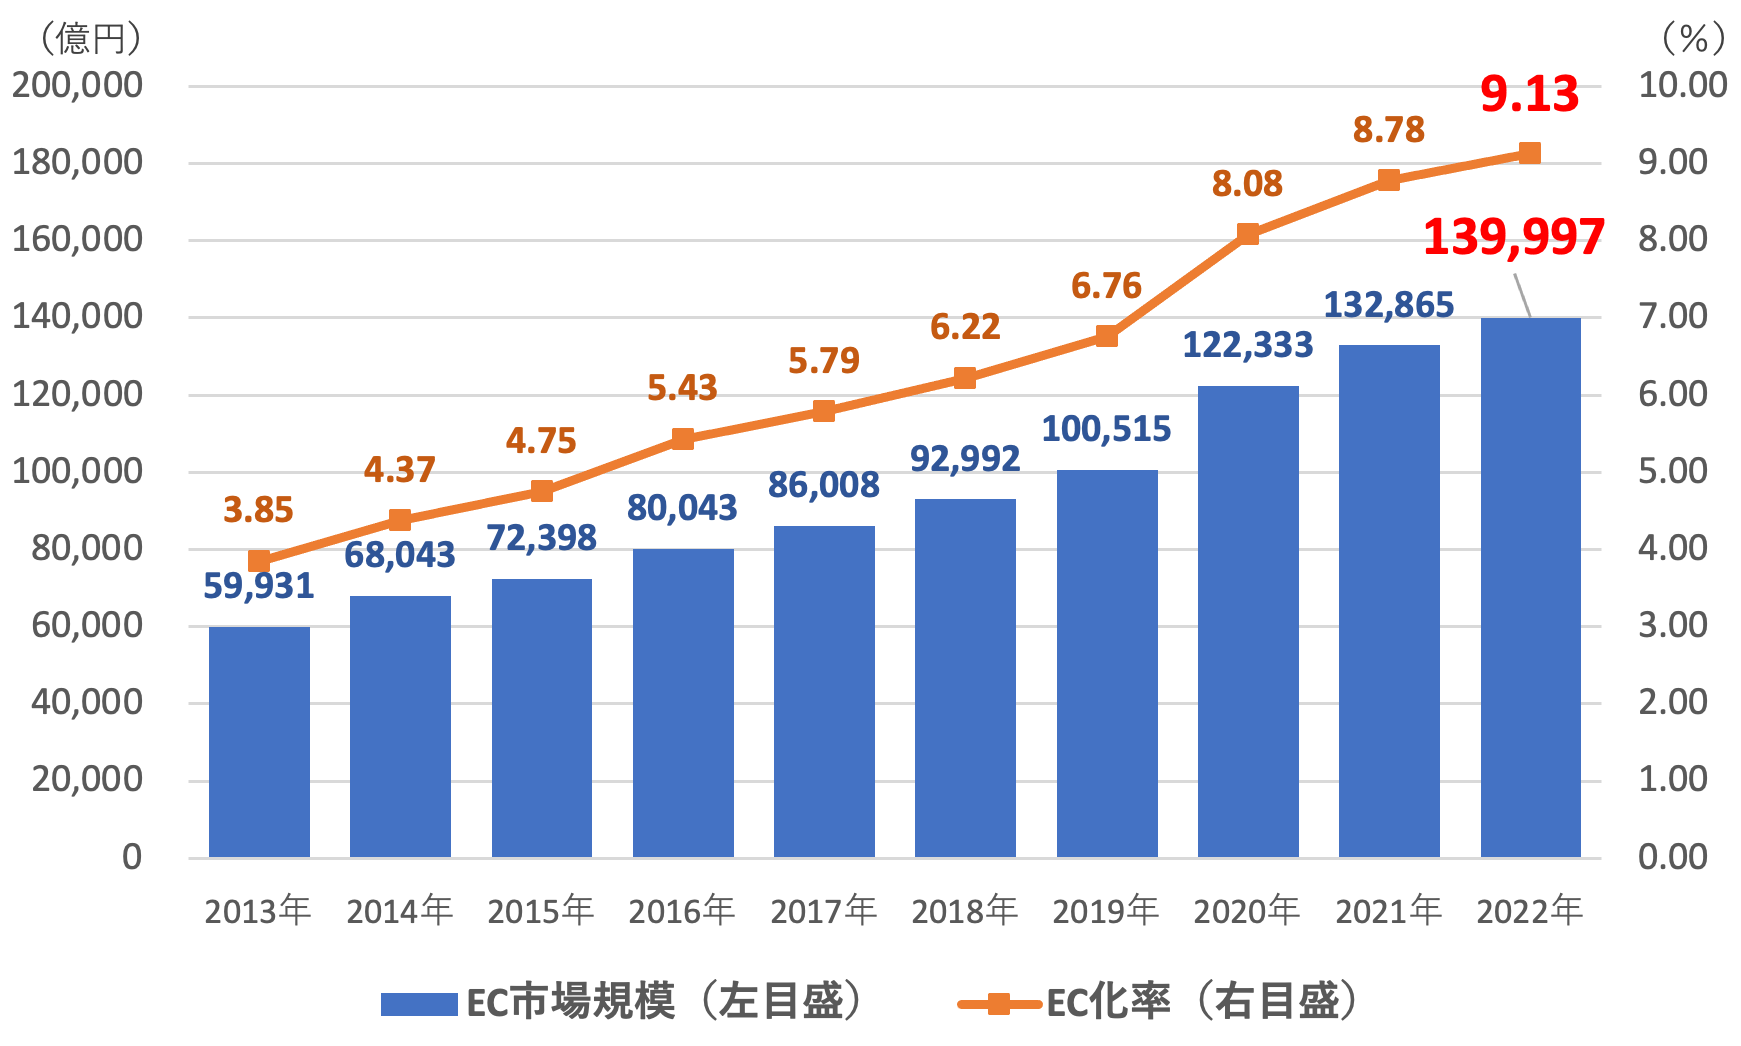 物販系分野のBtoC-EC市場規模及びEC化率の経年推移(2013-2022)